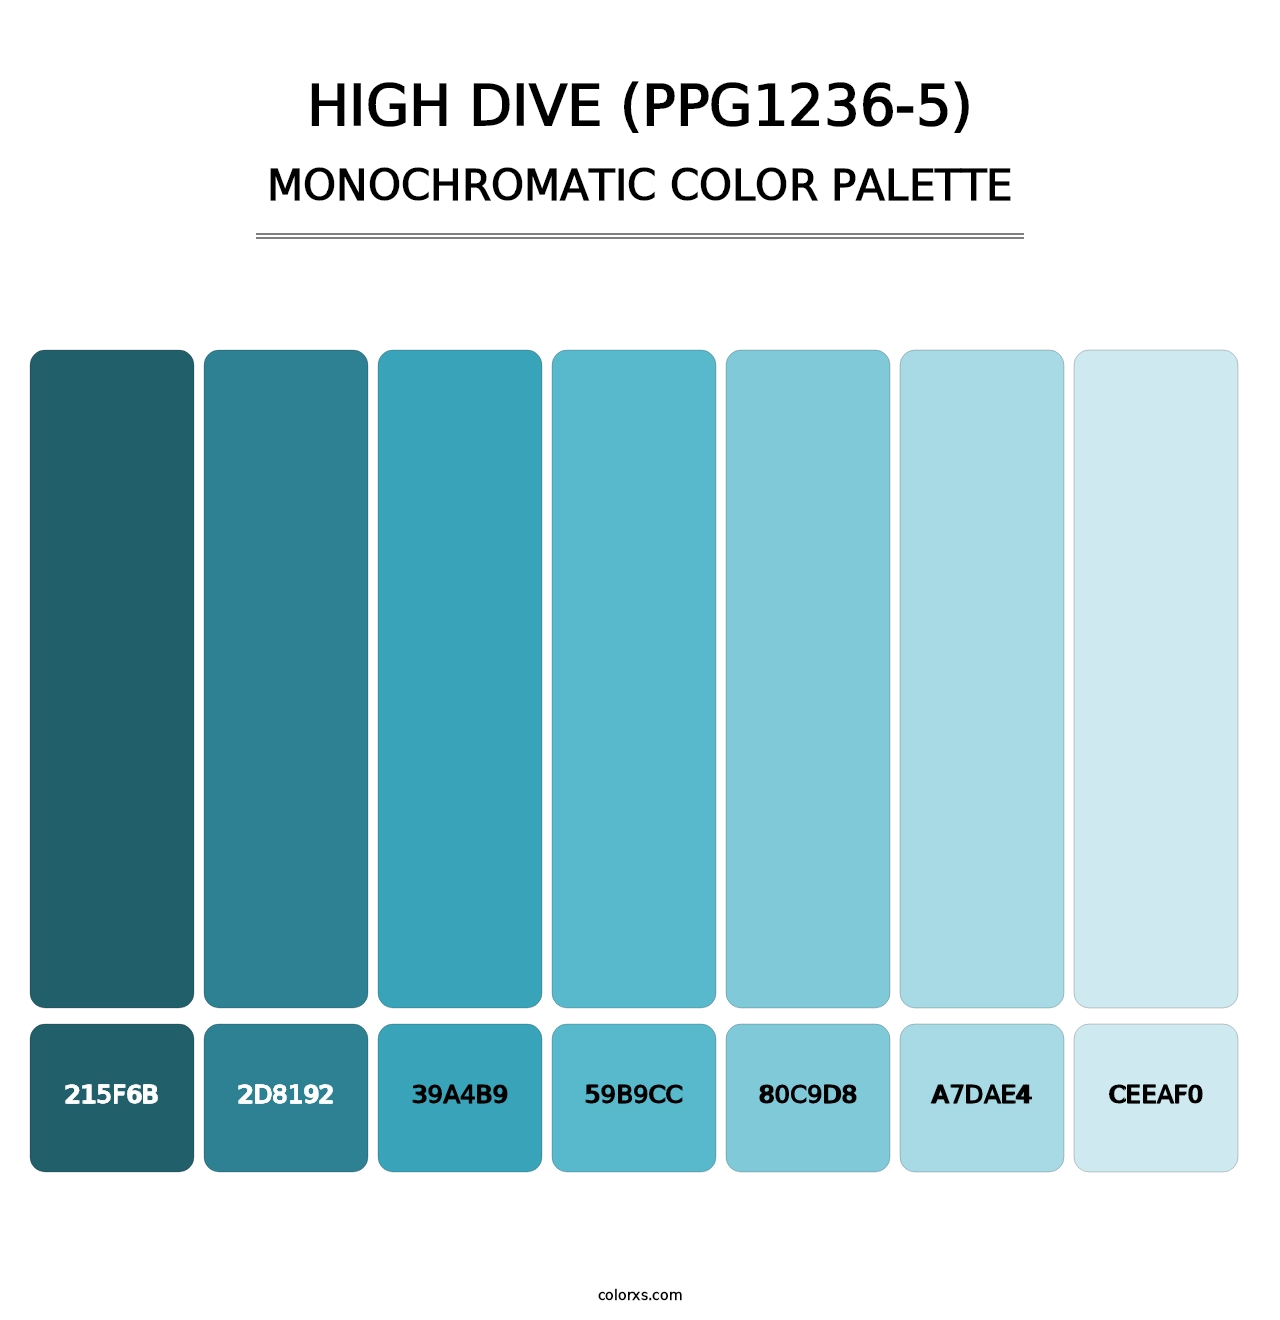 High Dive (PPG1236-5) - Monochromatic Color Palette